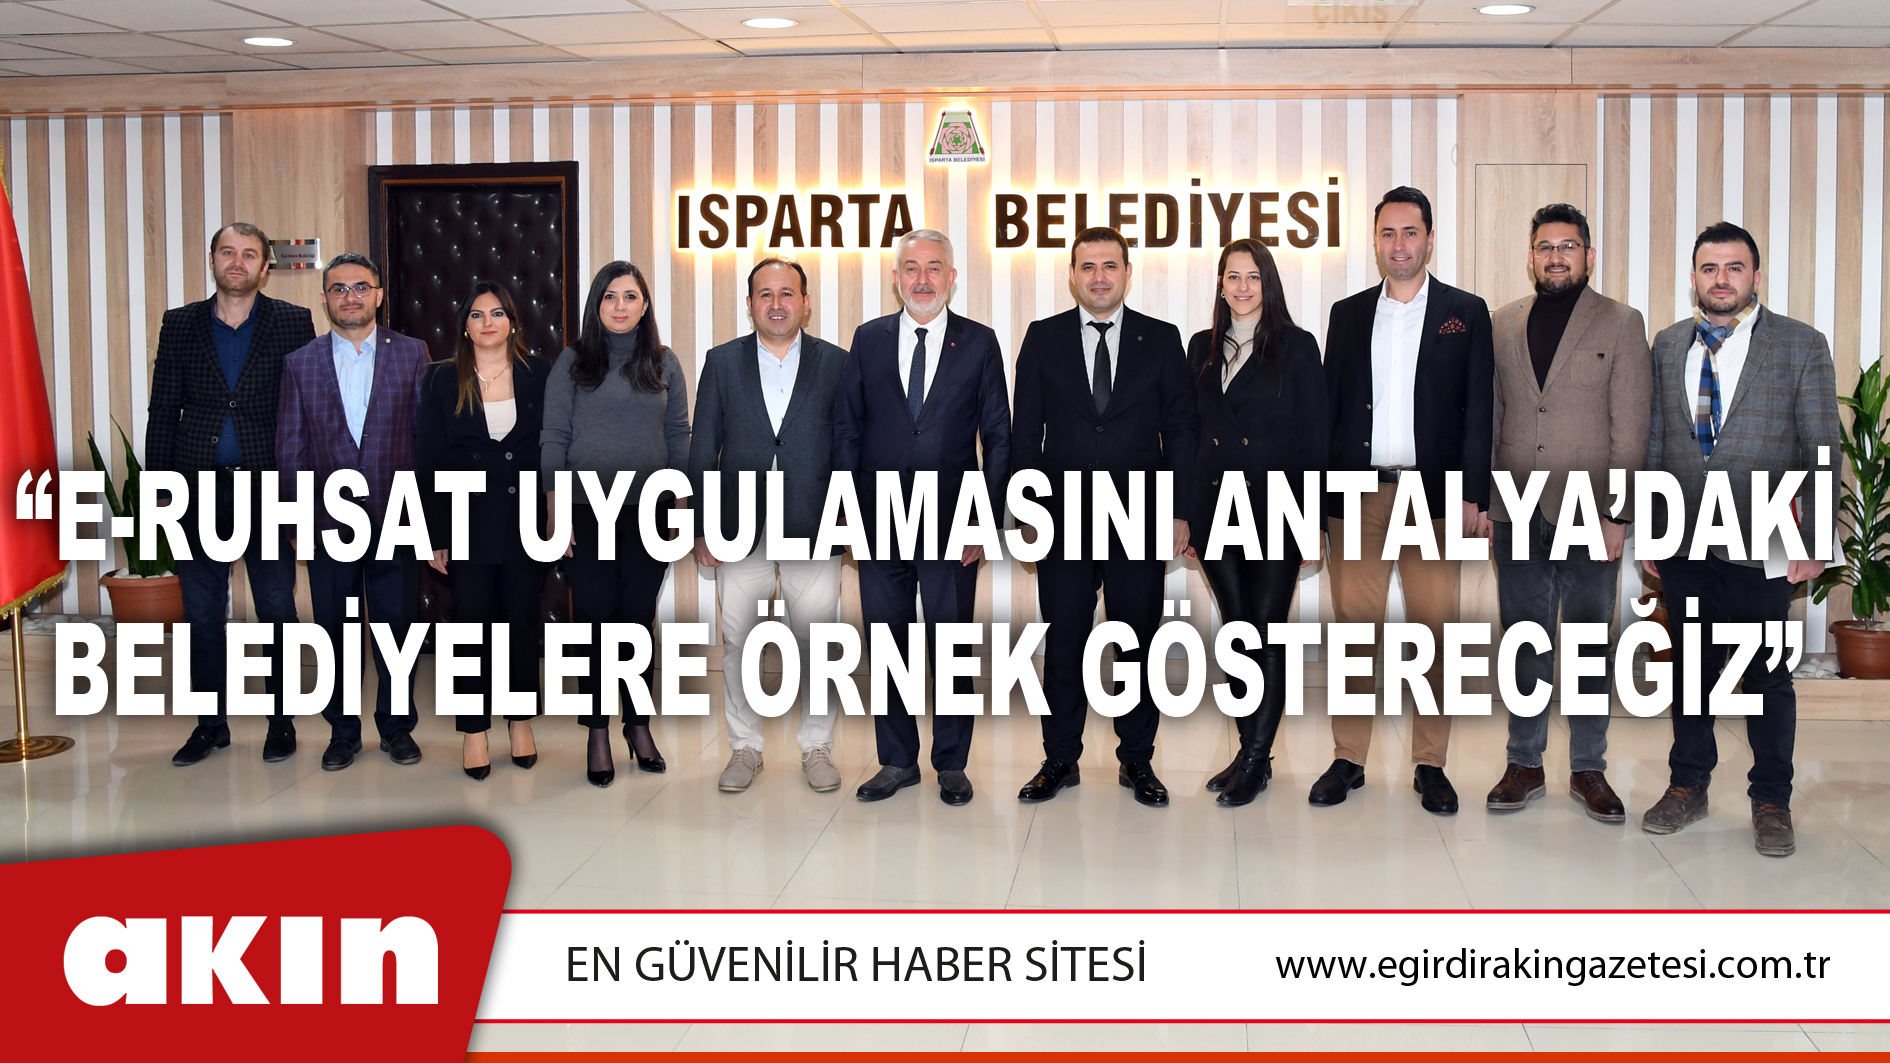 “E-Ruhsat Uygulamasını Antalya’daki Belediyelere Örnek Göstereceğiz”